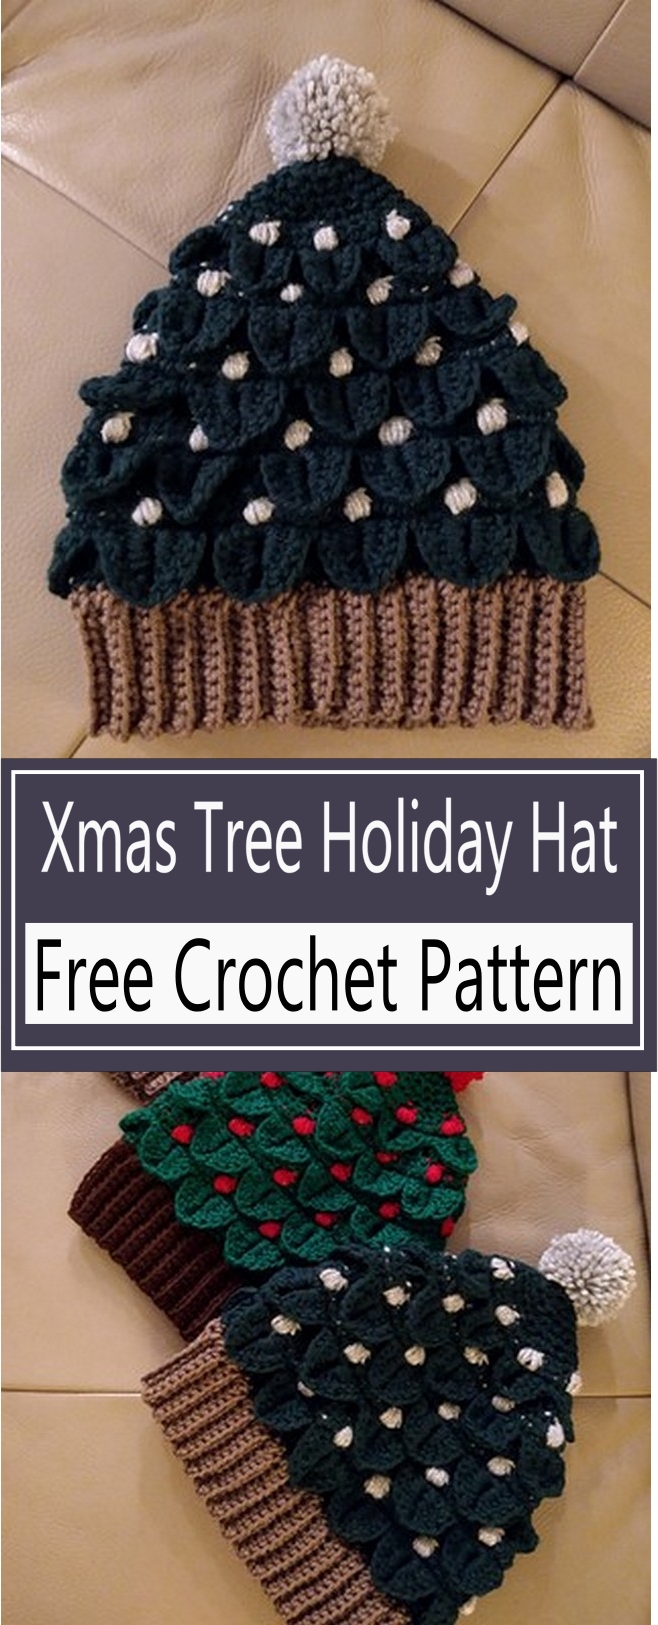 Xmas Tree Holiday Hat